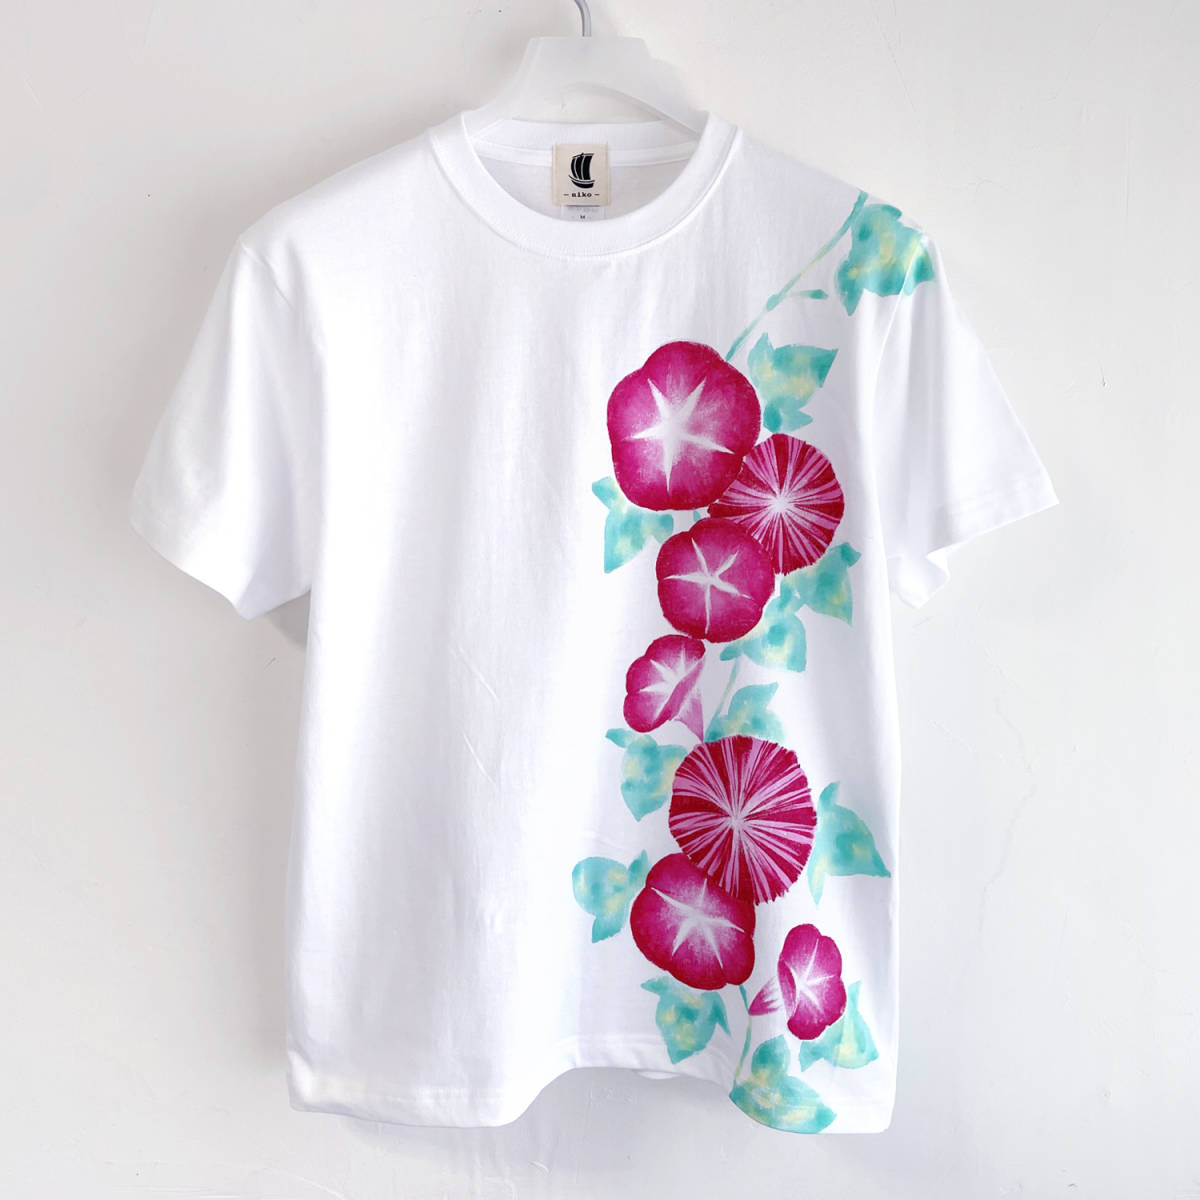 メンズ Tシャツ Sサイズ ピンク朝顔柄Tシャツ ホワイト ハンドメイド 手描きTシャツ 花柄, Sサイズ, 丸首, 柄もの